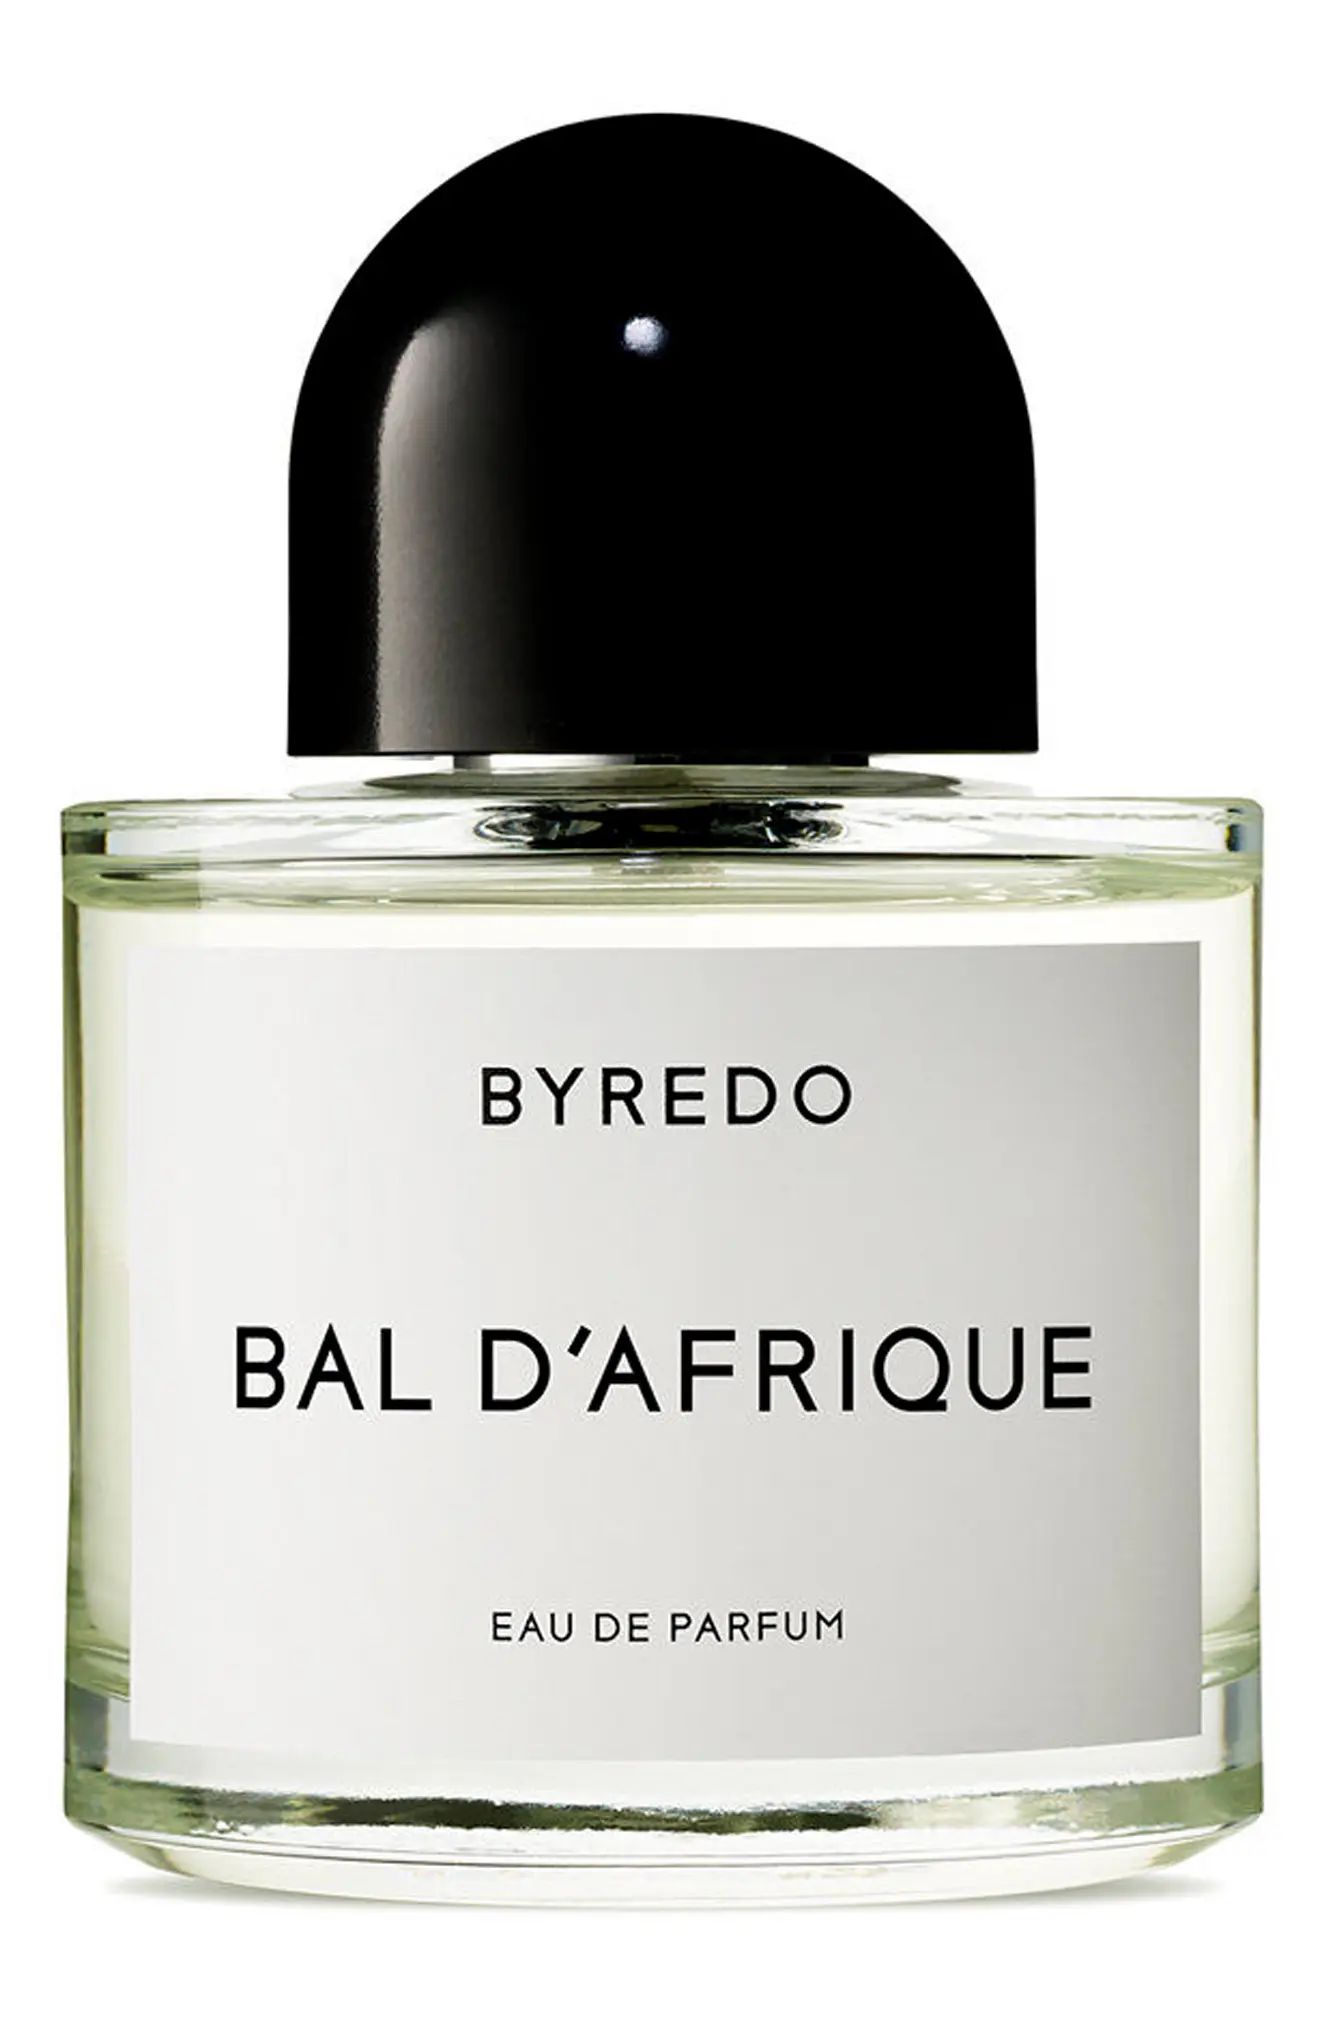 BYREDO Bal d'Afrique Eau de Parfum at Nordstrom, Size 3.4 Oz | Nordstrom